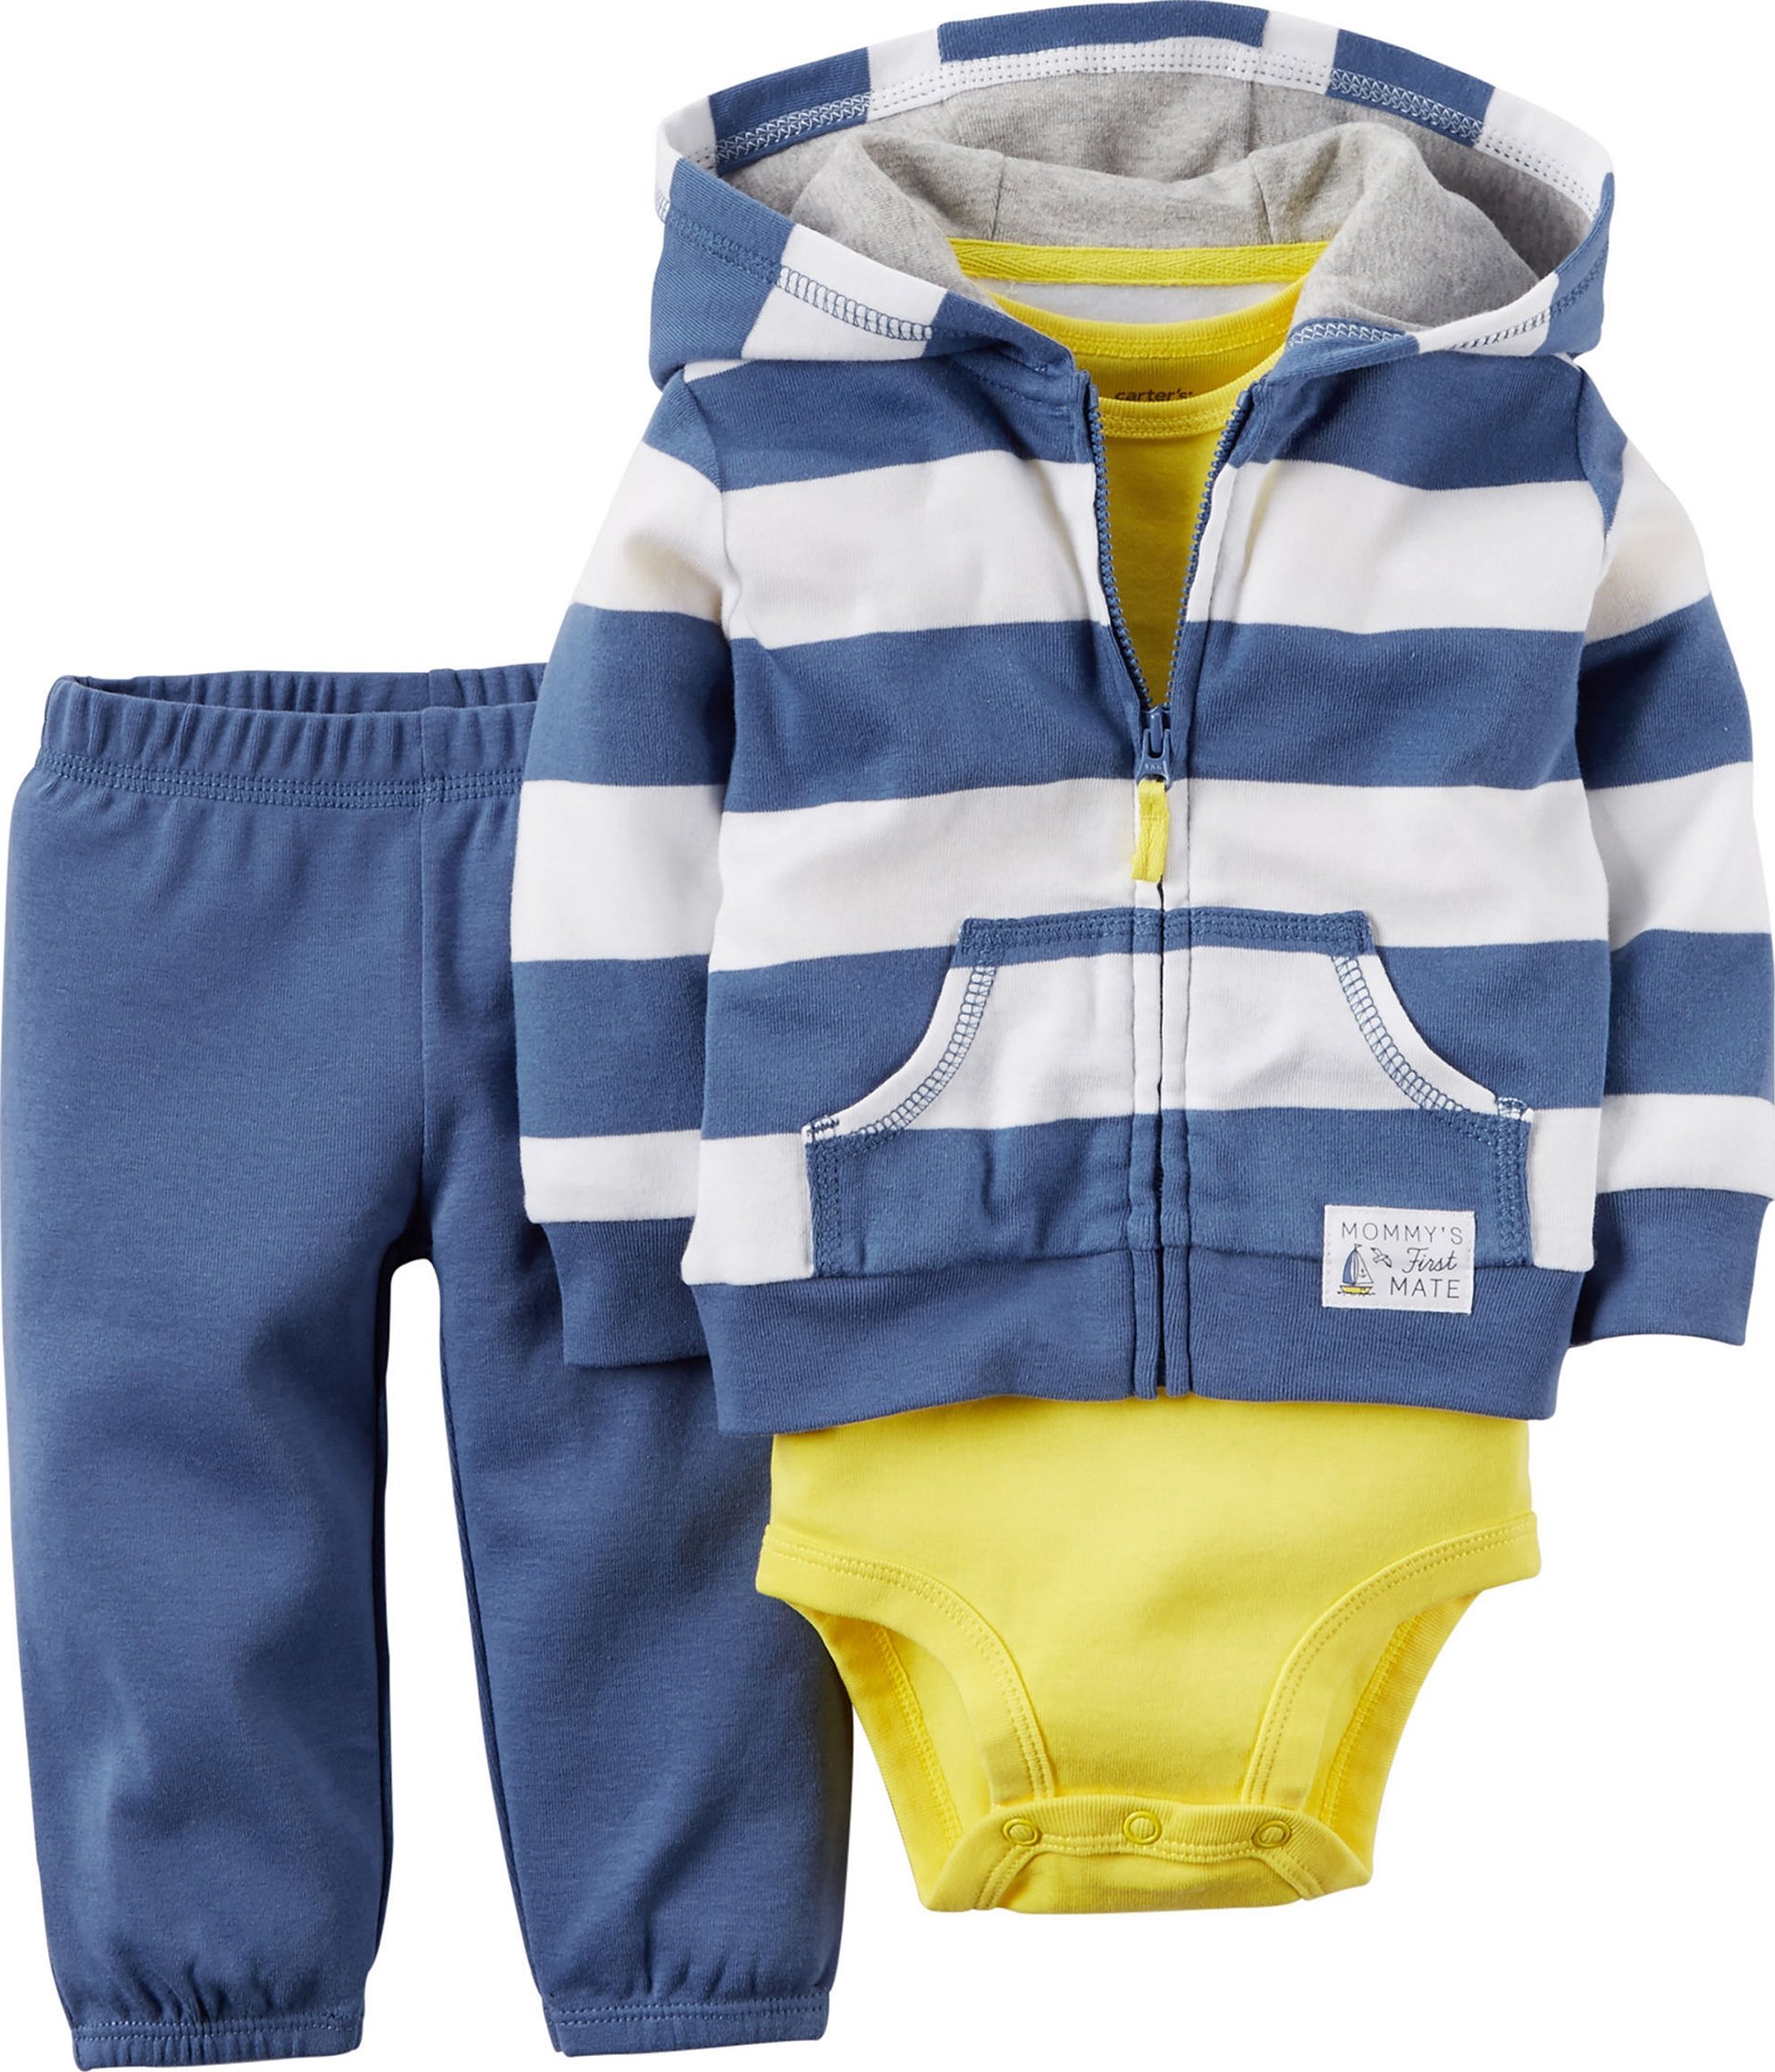 Картерс одежда для новорожденных мальчиков